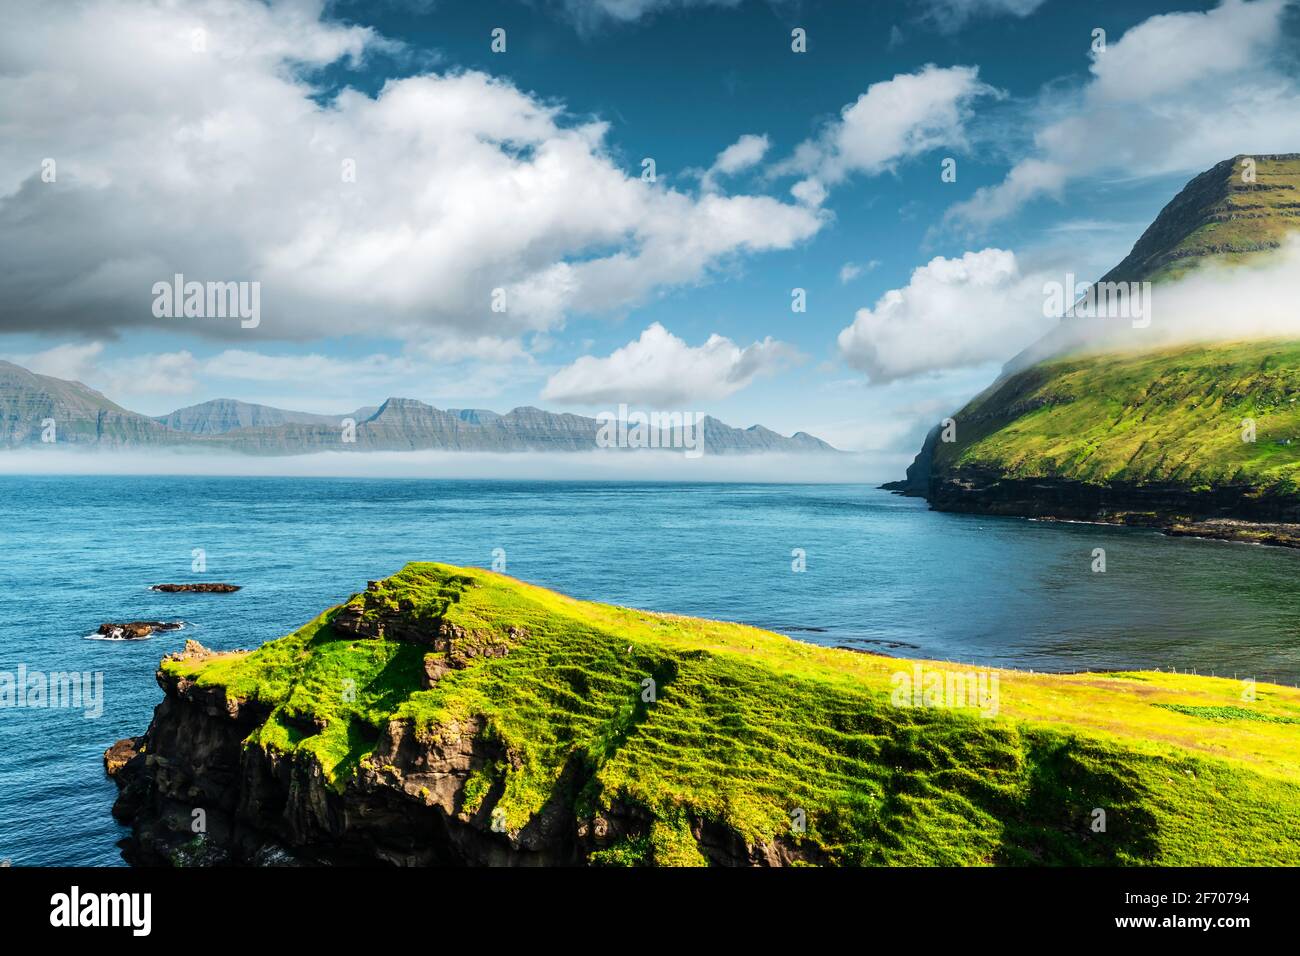 Vista pittoresca sulle verdi montagne delle isole faroesi vicino al villaggio di Gjogv sull'isola di Eysturoy, Isole Faroe, Danimarca. Fotografia di paesaggio Foto Stock